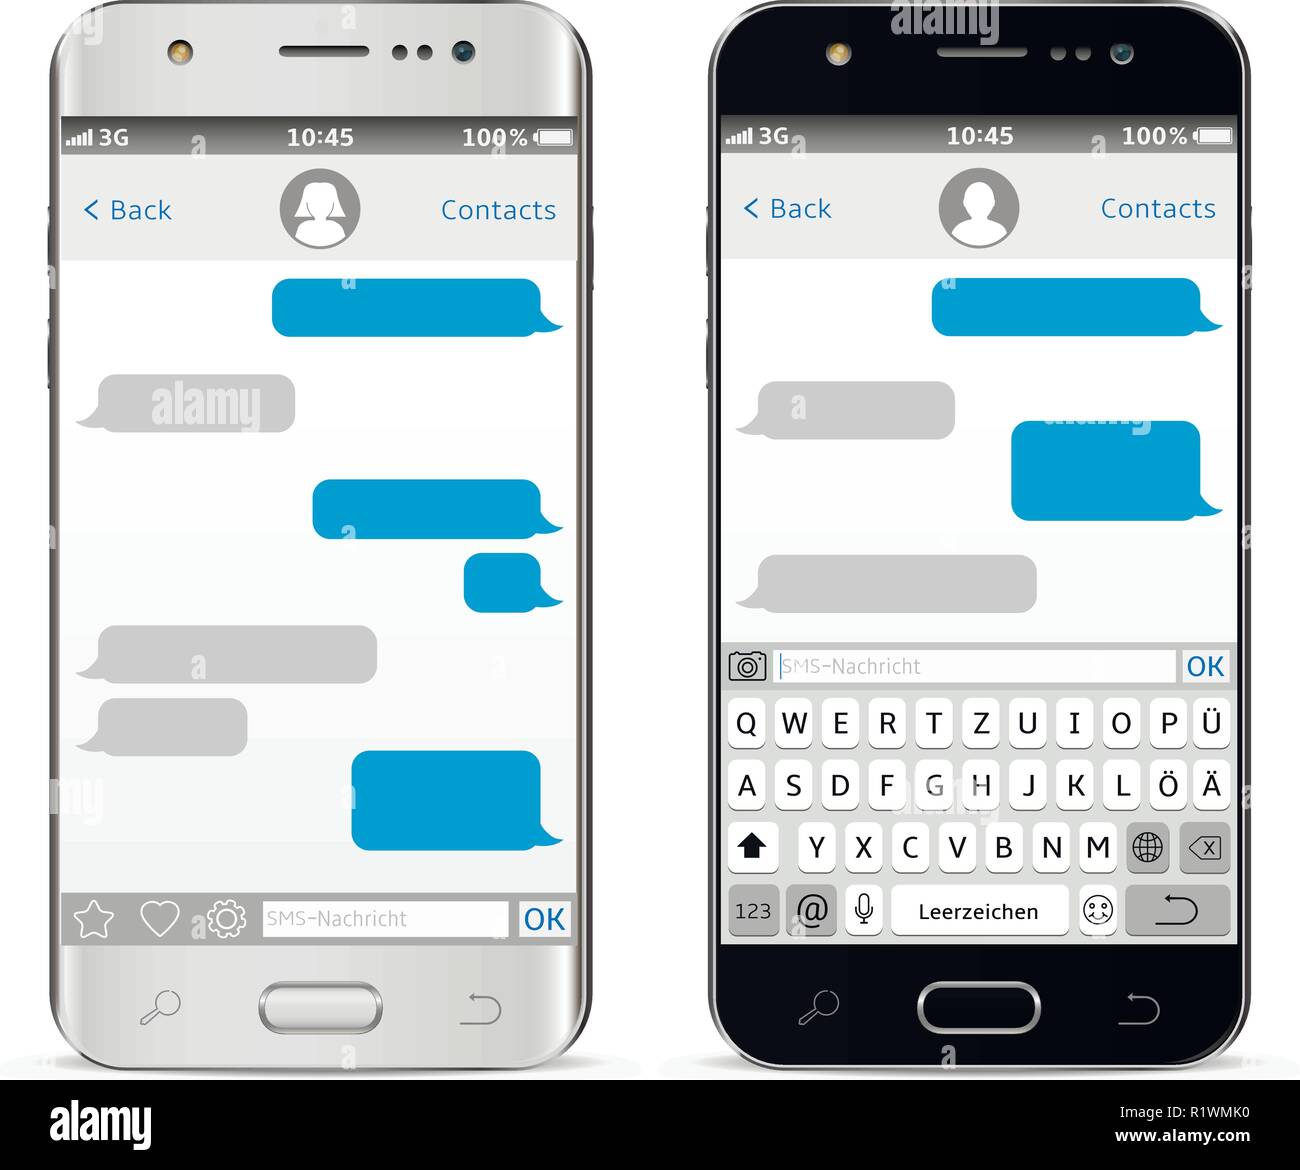 Les téléphones mobiles avec clavier virtuel alphabet Allemagne Illustration de Vecteur